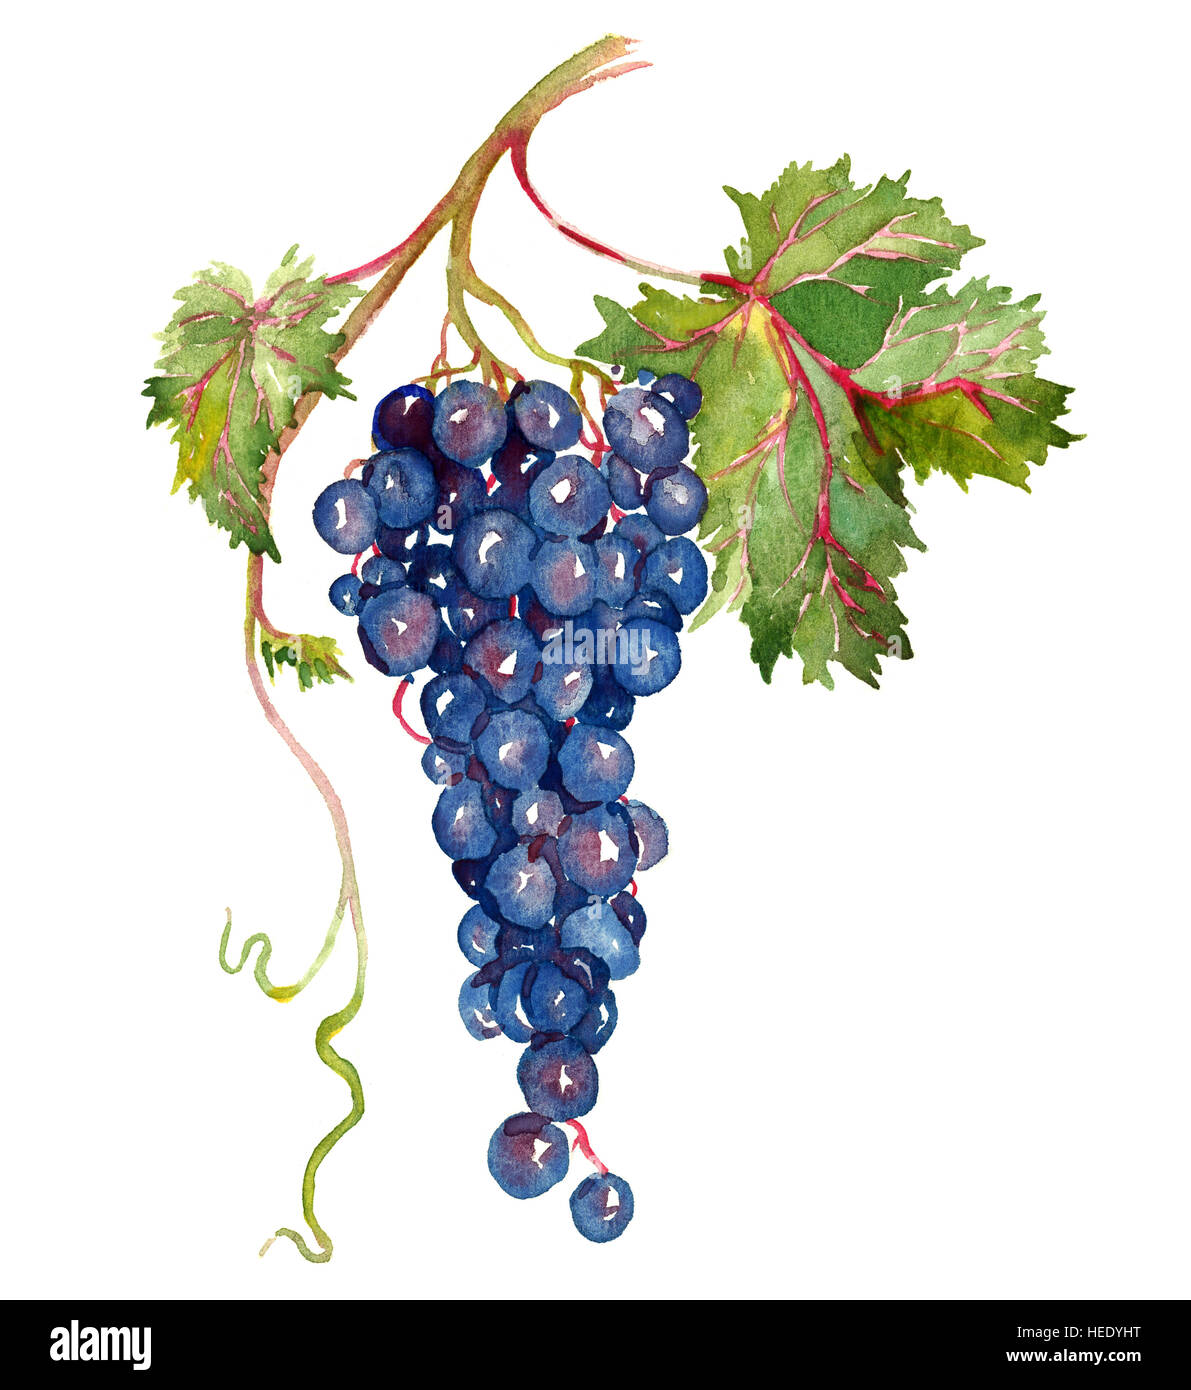 Racimo de uvas rojas con hojas pintadas a mano, ilustración acuarela  Fotografía de stock - Alamy